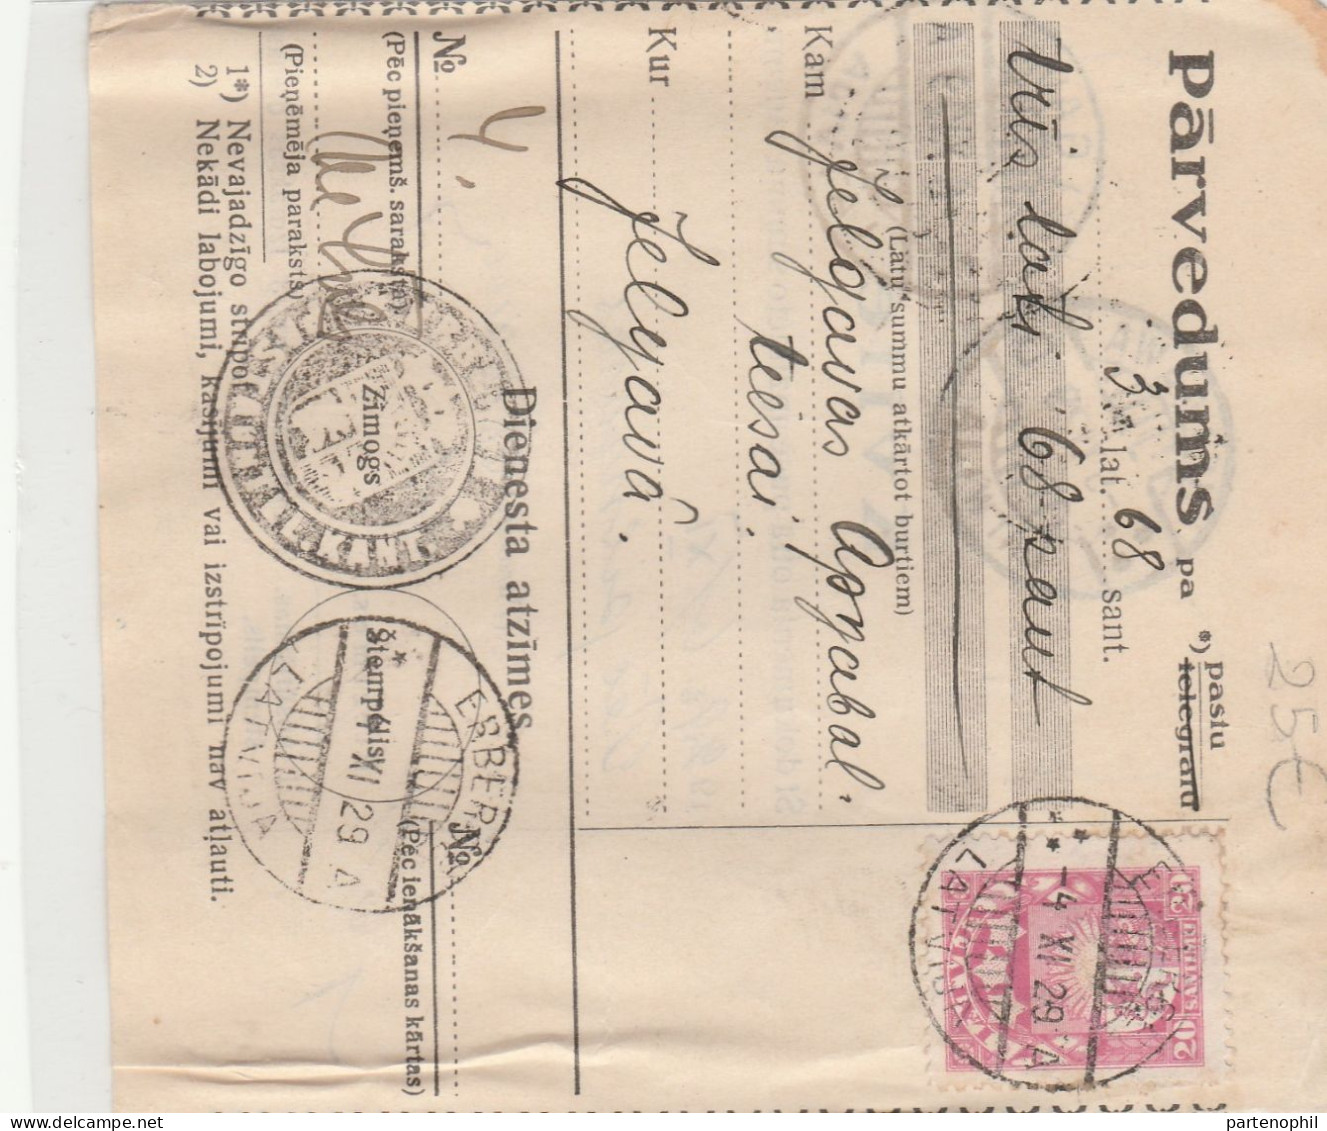 674 - Russia 1900/70 insieme di 69 interessanti affrancature tra lettere e cartoline con molte interessanti presenza da